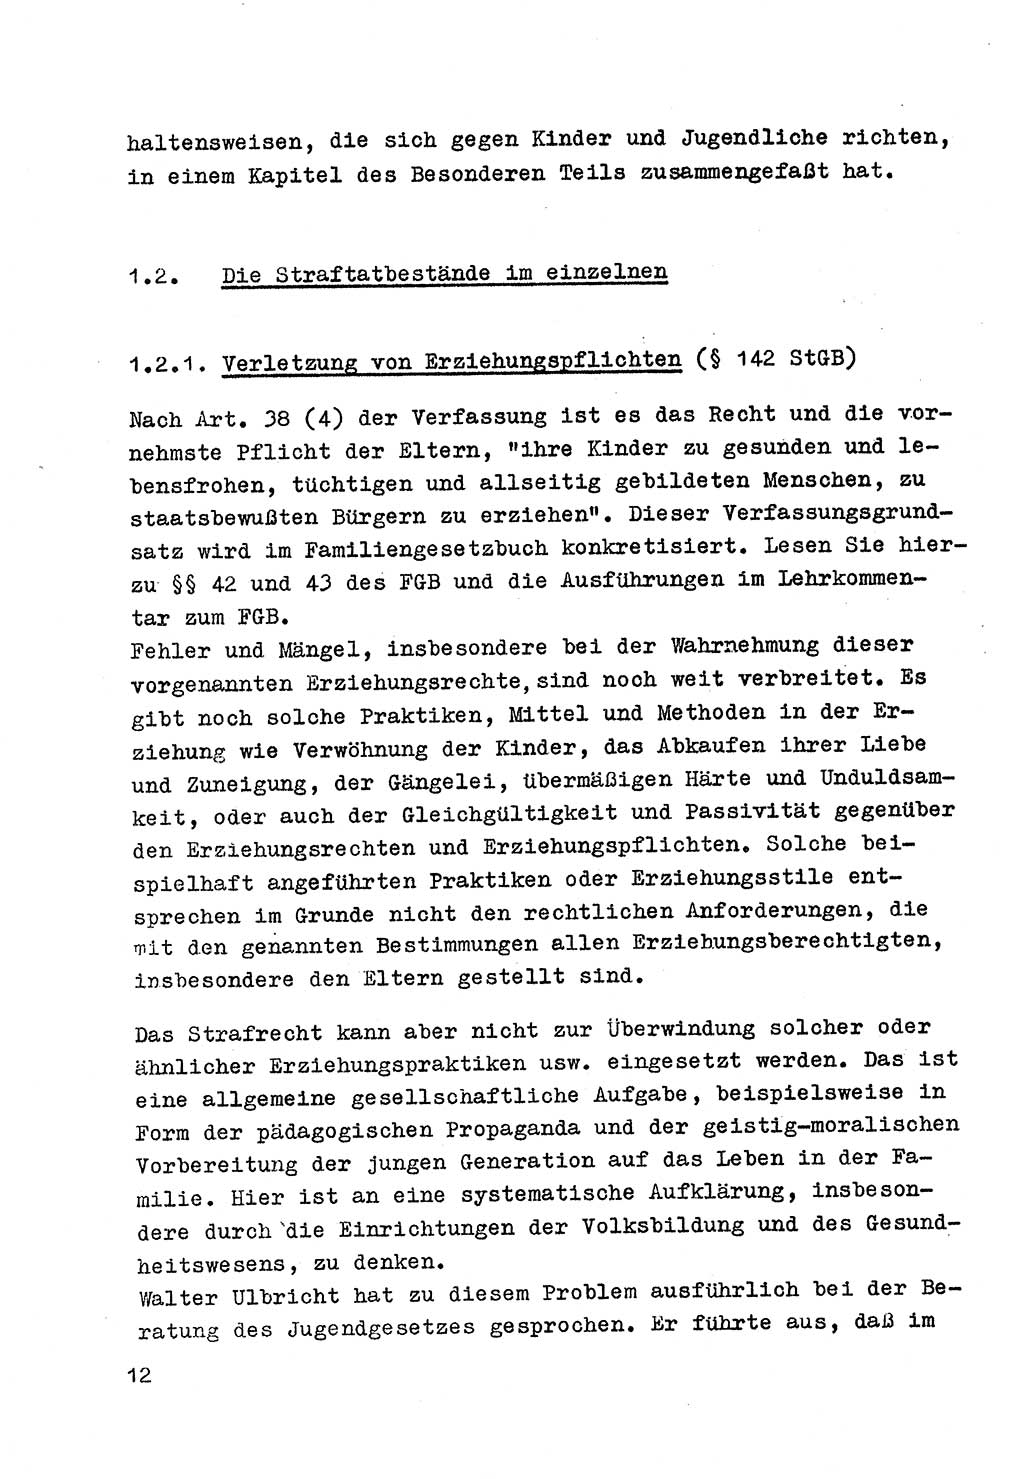 Strafrecht der DDR (Deutsche Demokratische Republik), Besonderer Teil, Lehrmaterial, Heft 4 1969, Seite 12 (Strafr. DDR BT Lehrmat. H. 4 1969, S. 12)